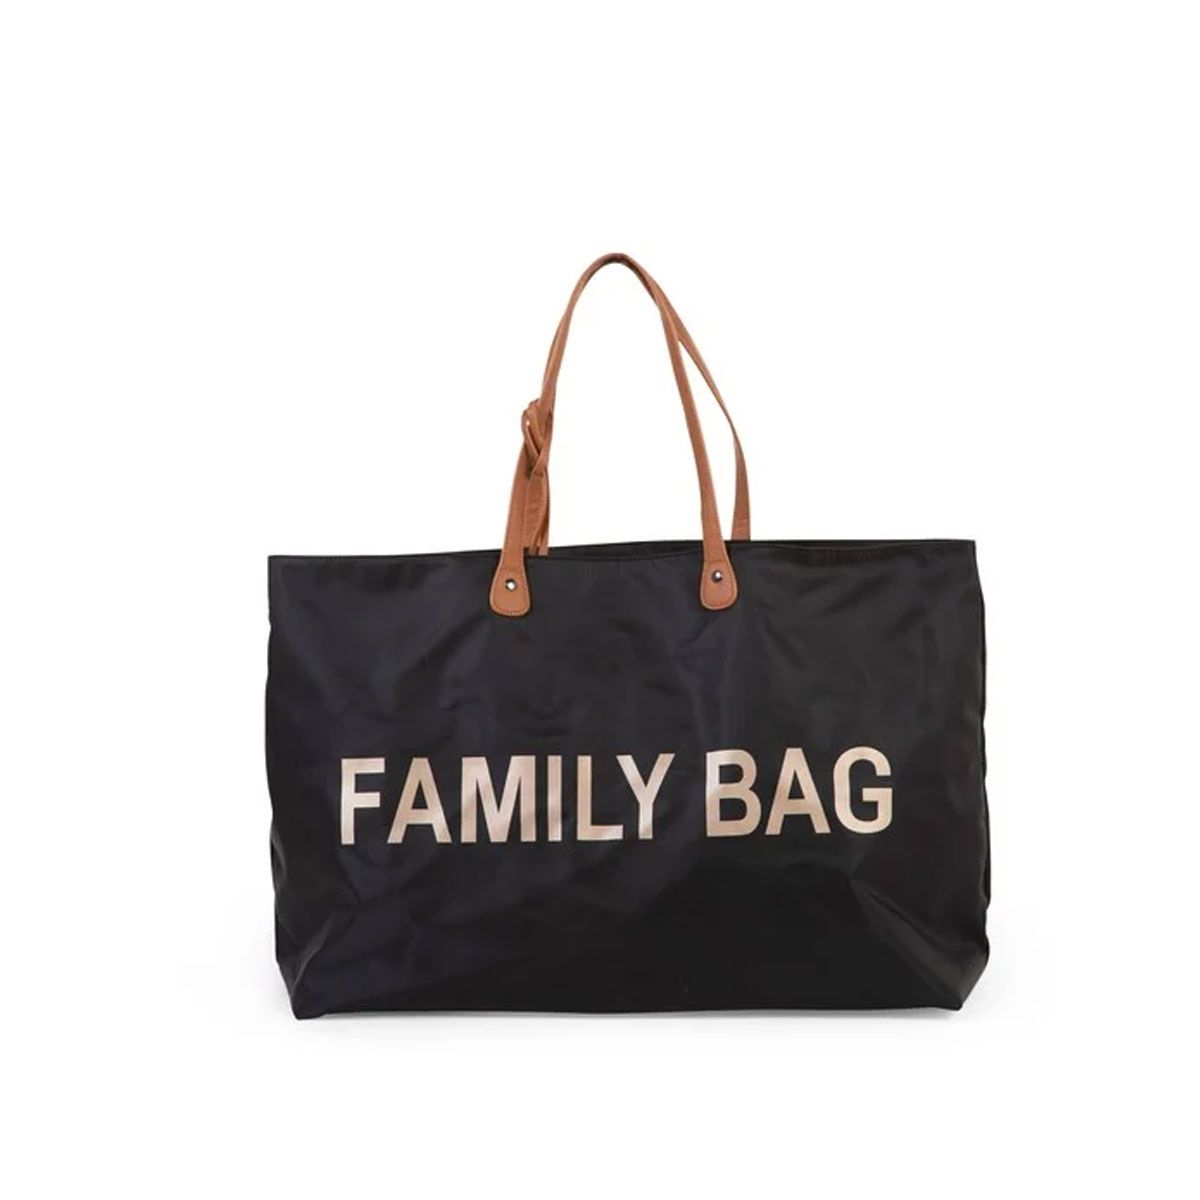 Τσάντα Family bag black Childhome